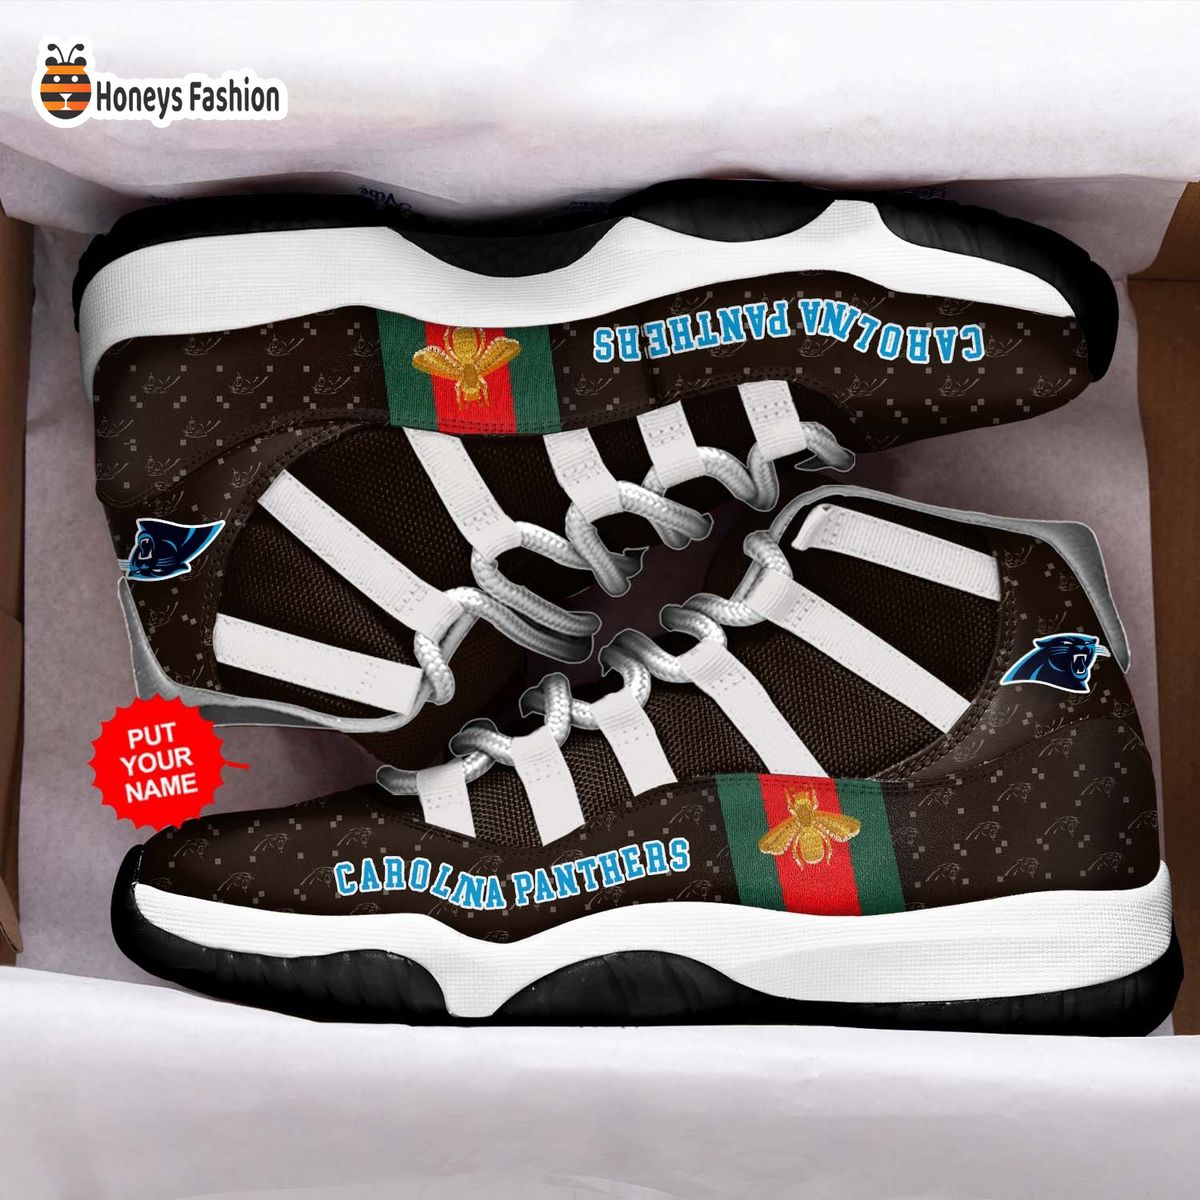 Carolina Panthers NFL Gucci Air Jordan 11 Shoes